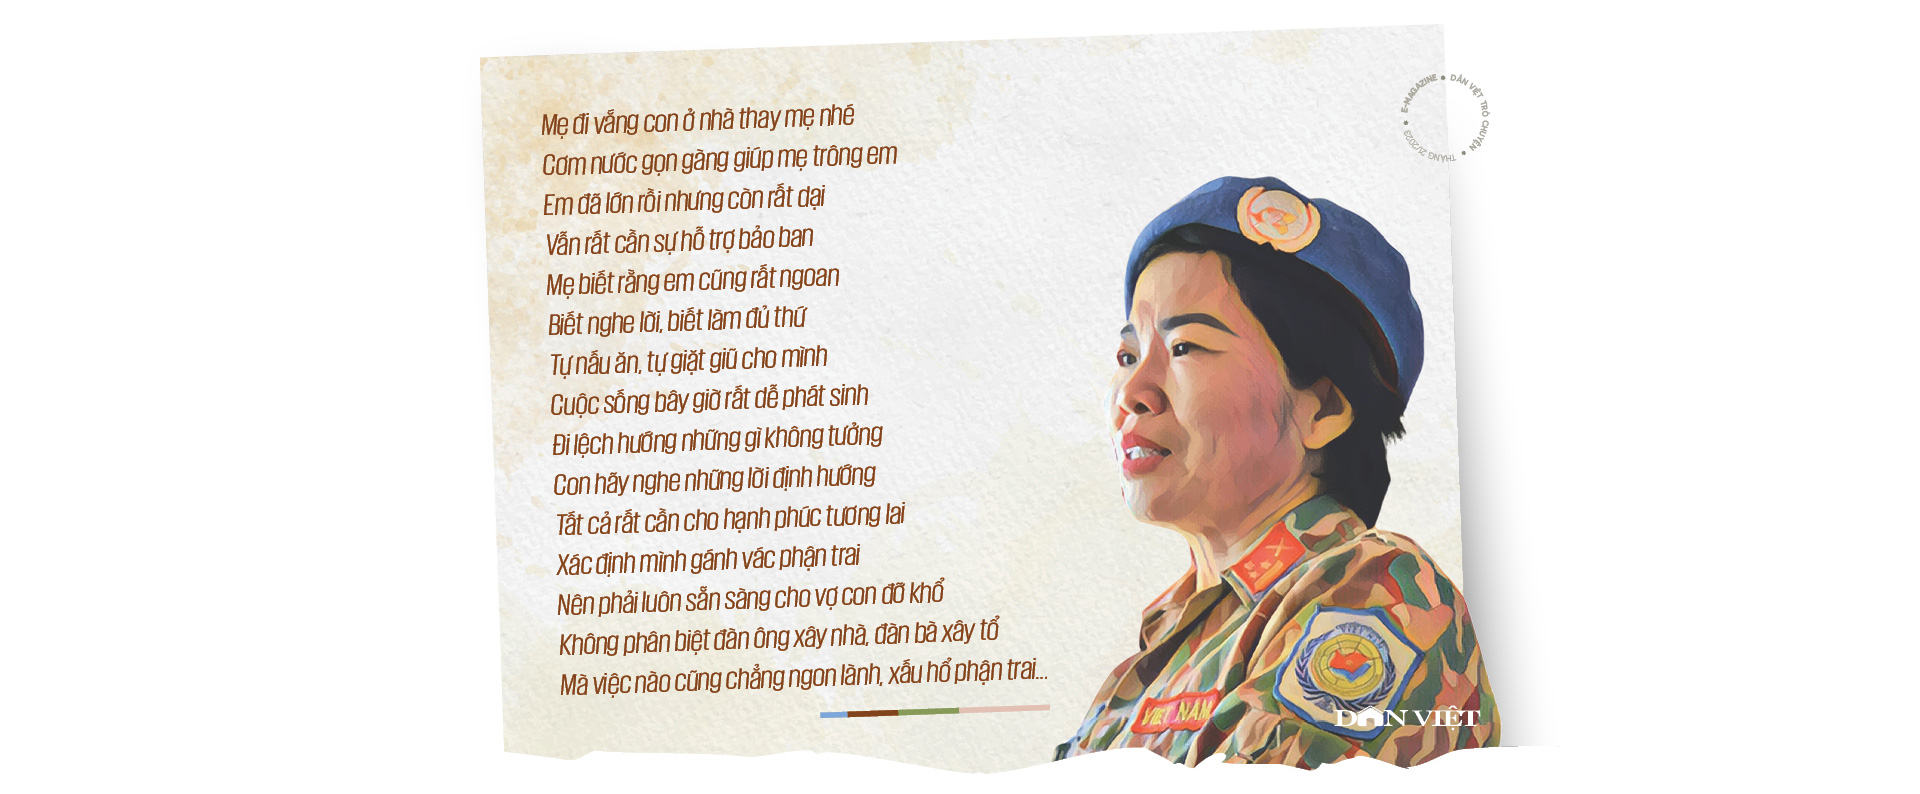 Nữ quân nhân 2 lần gìn giữ hoà bình Liên Hợp Quốc: "Mẹ ạ, nhiệm vụ của người lính con không thể làm khác được"- Ảnh 4.